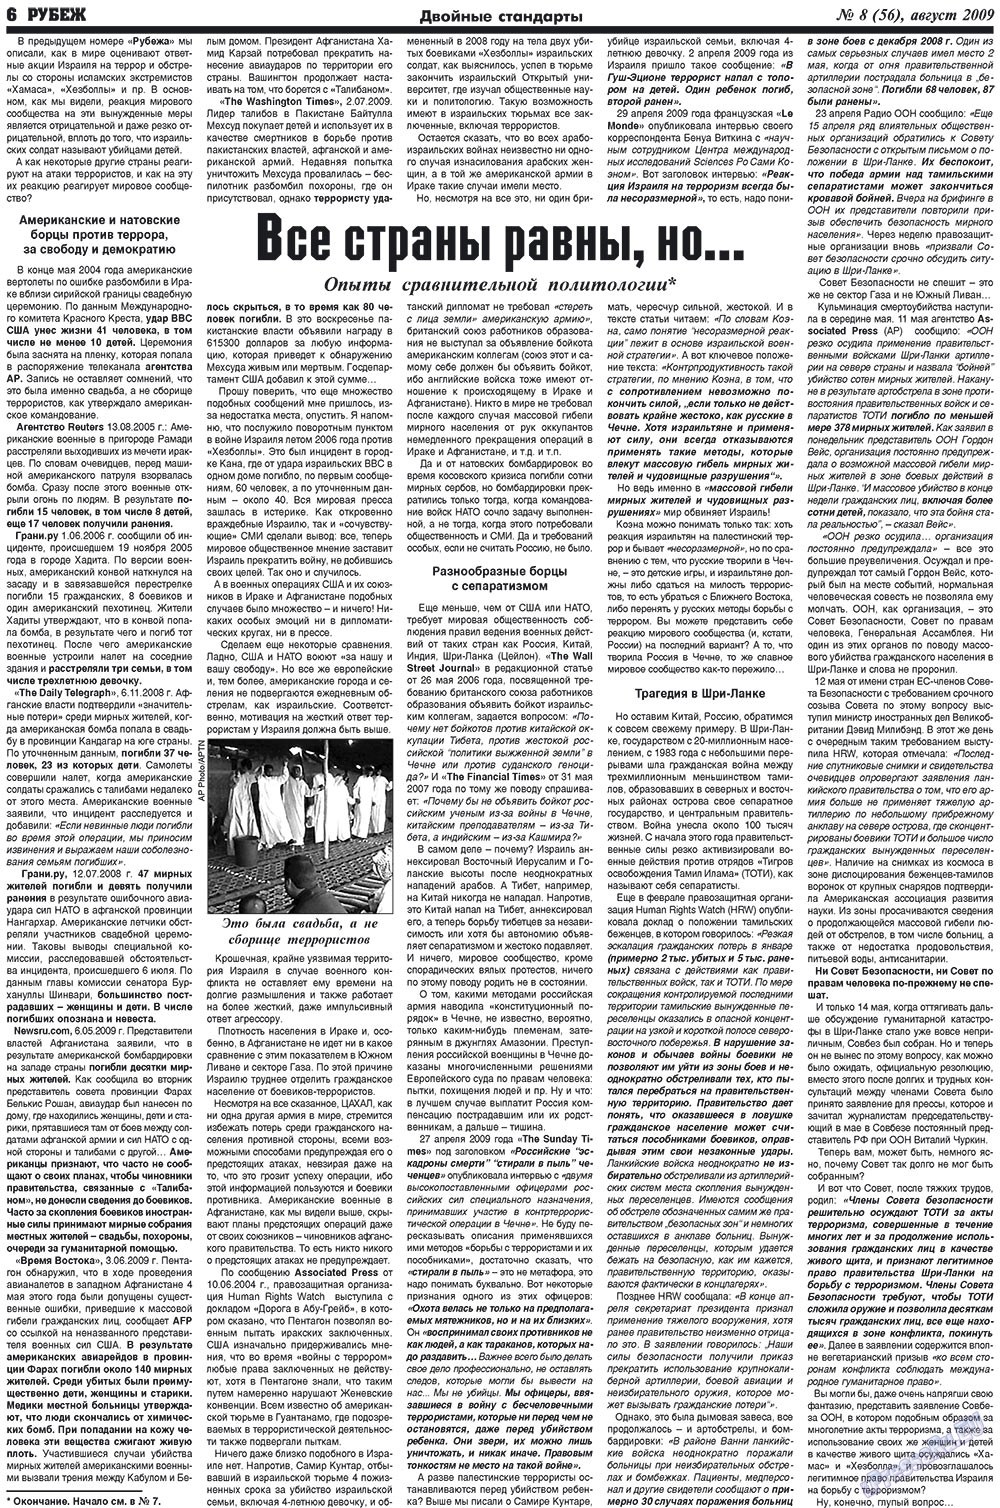 Рубеж (газета). 2009 год, номер 8, стр. 6